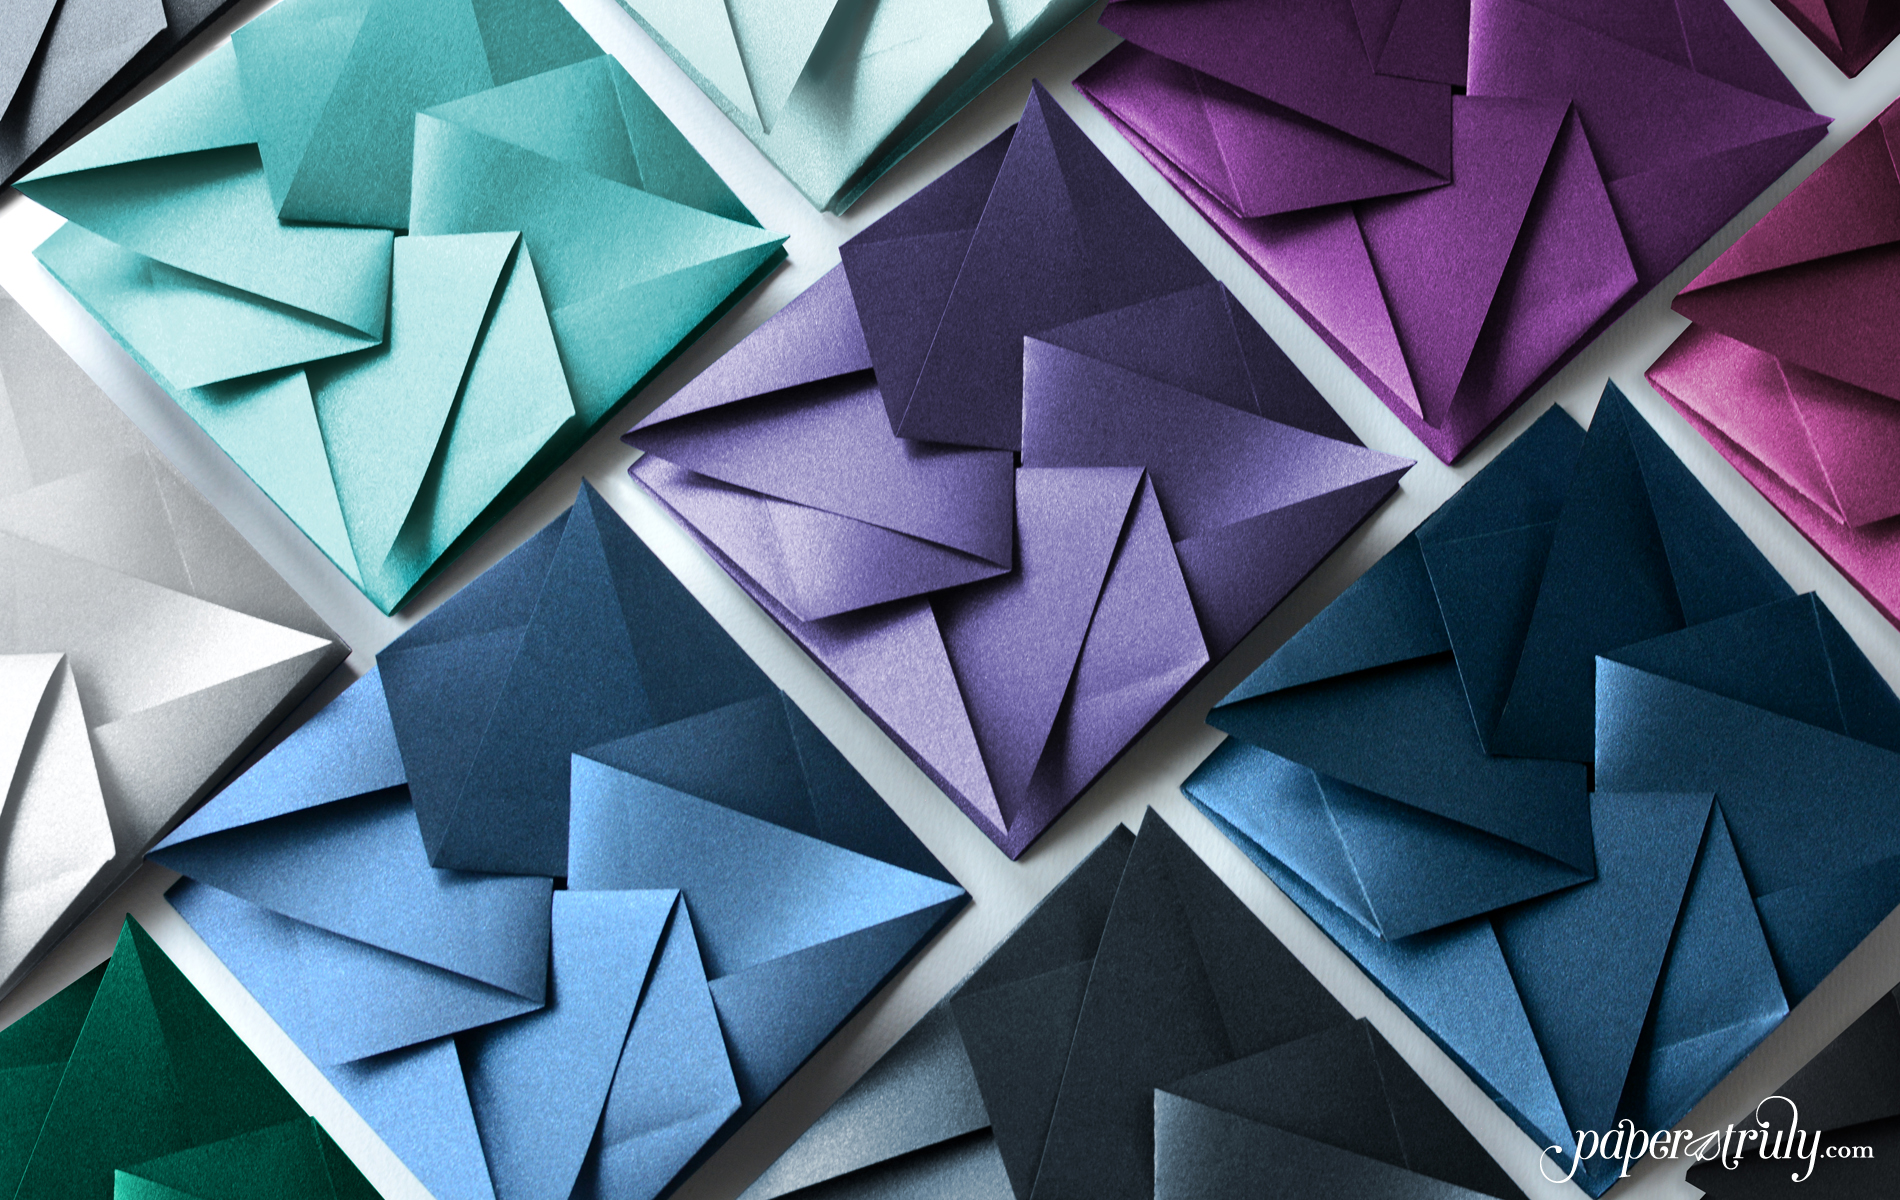 origami envelope pocket